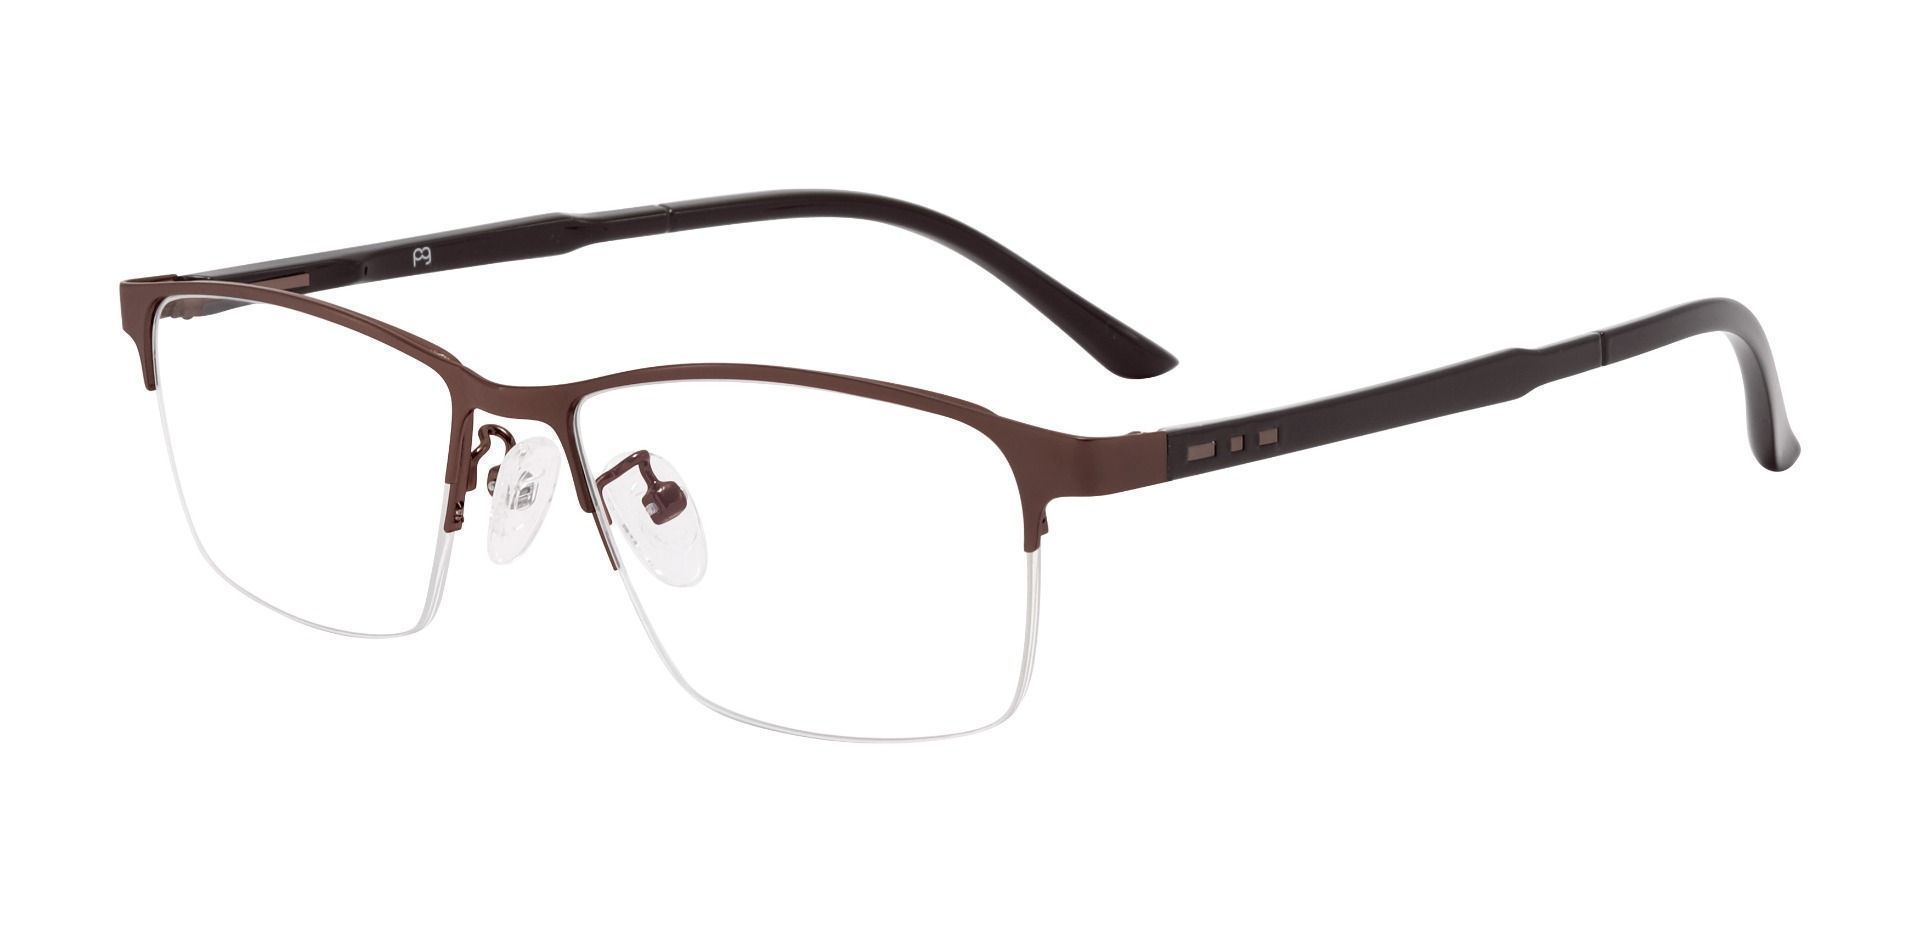 Alvin Rectangle Prescription Glasses - Brown